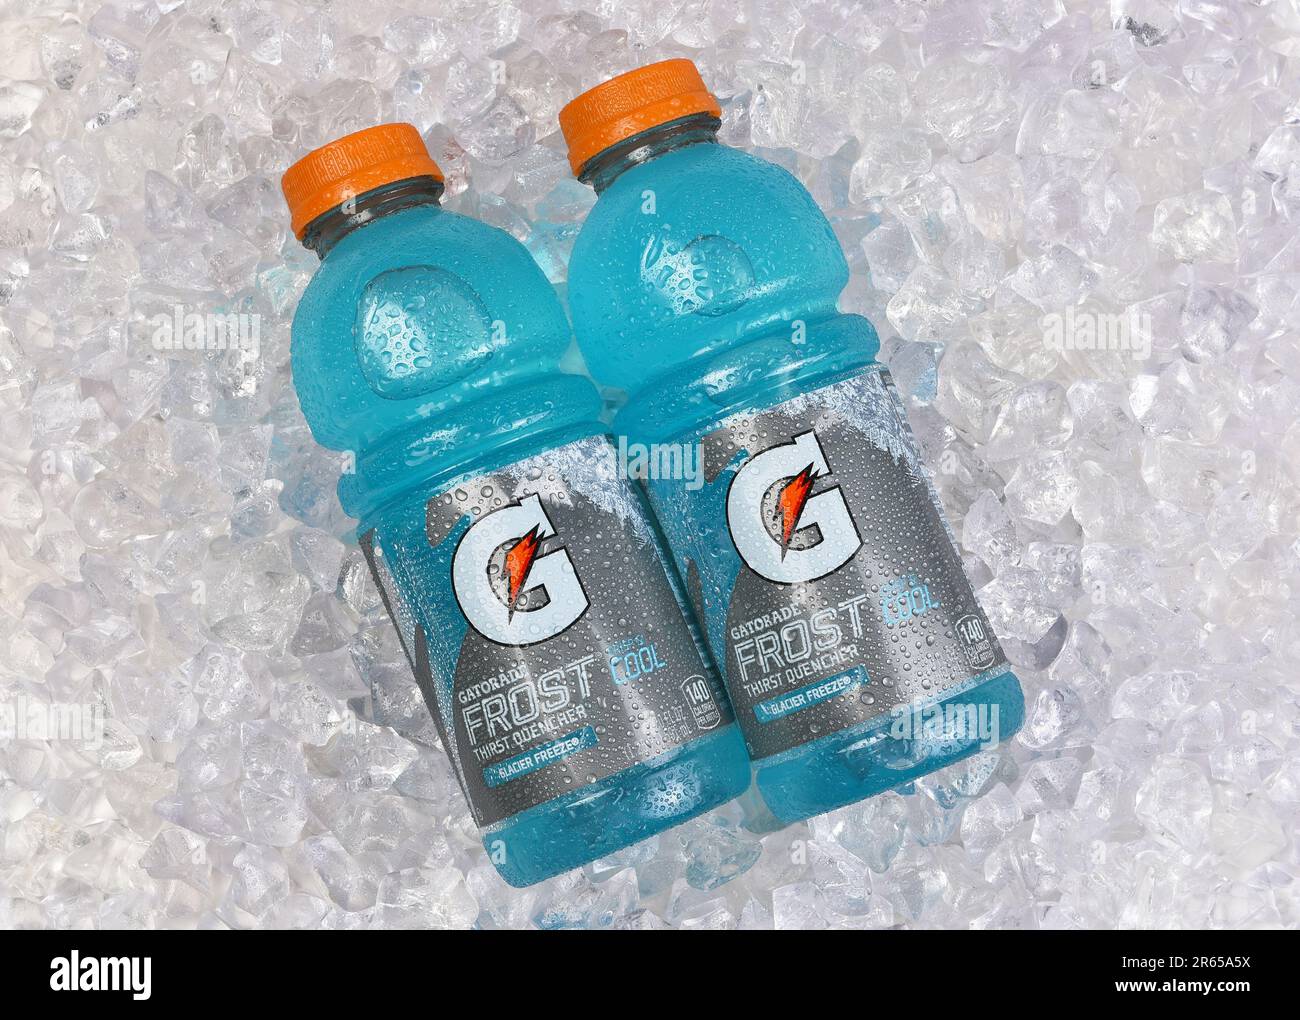 IRVINE, KALIFORNIEN - 5. JUNI 2023: Zwei Flaschen Gatorade Frost Glacier Freeze Durst Quencher auf Eis. Stockfoto